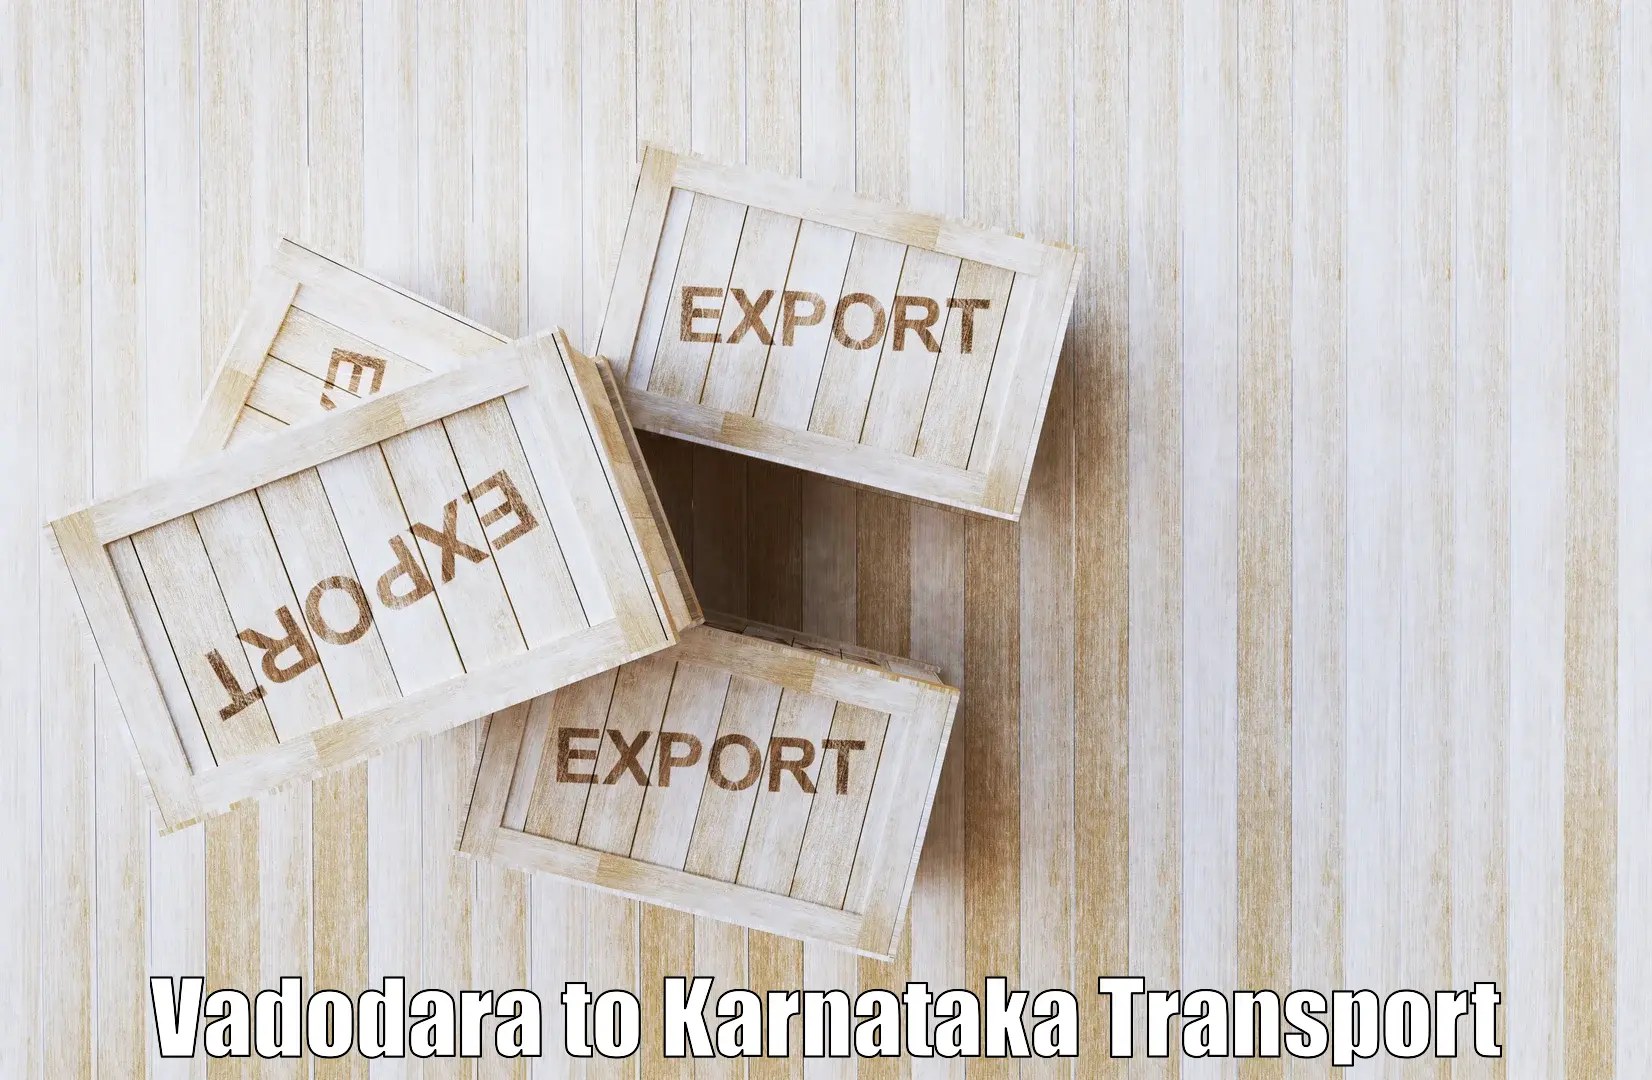 Transport services Vadodara to Kulshekar